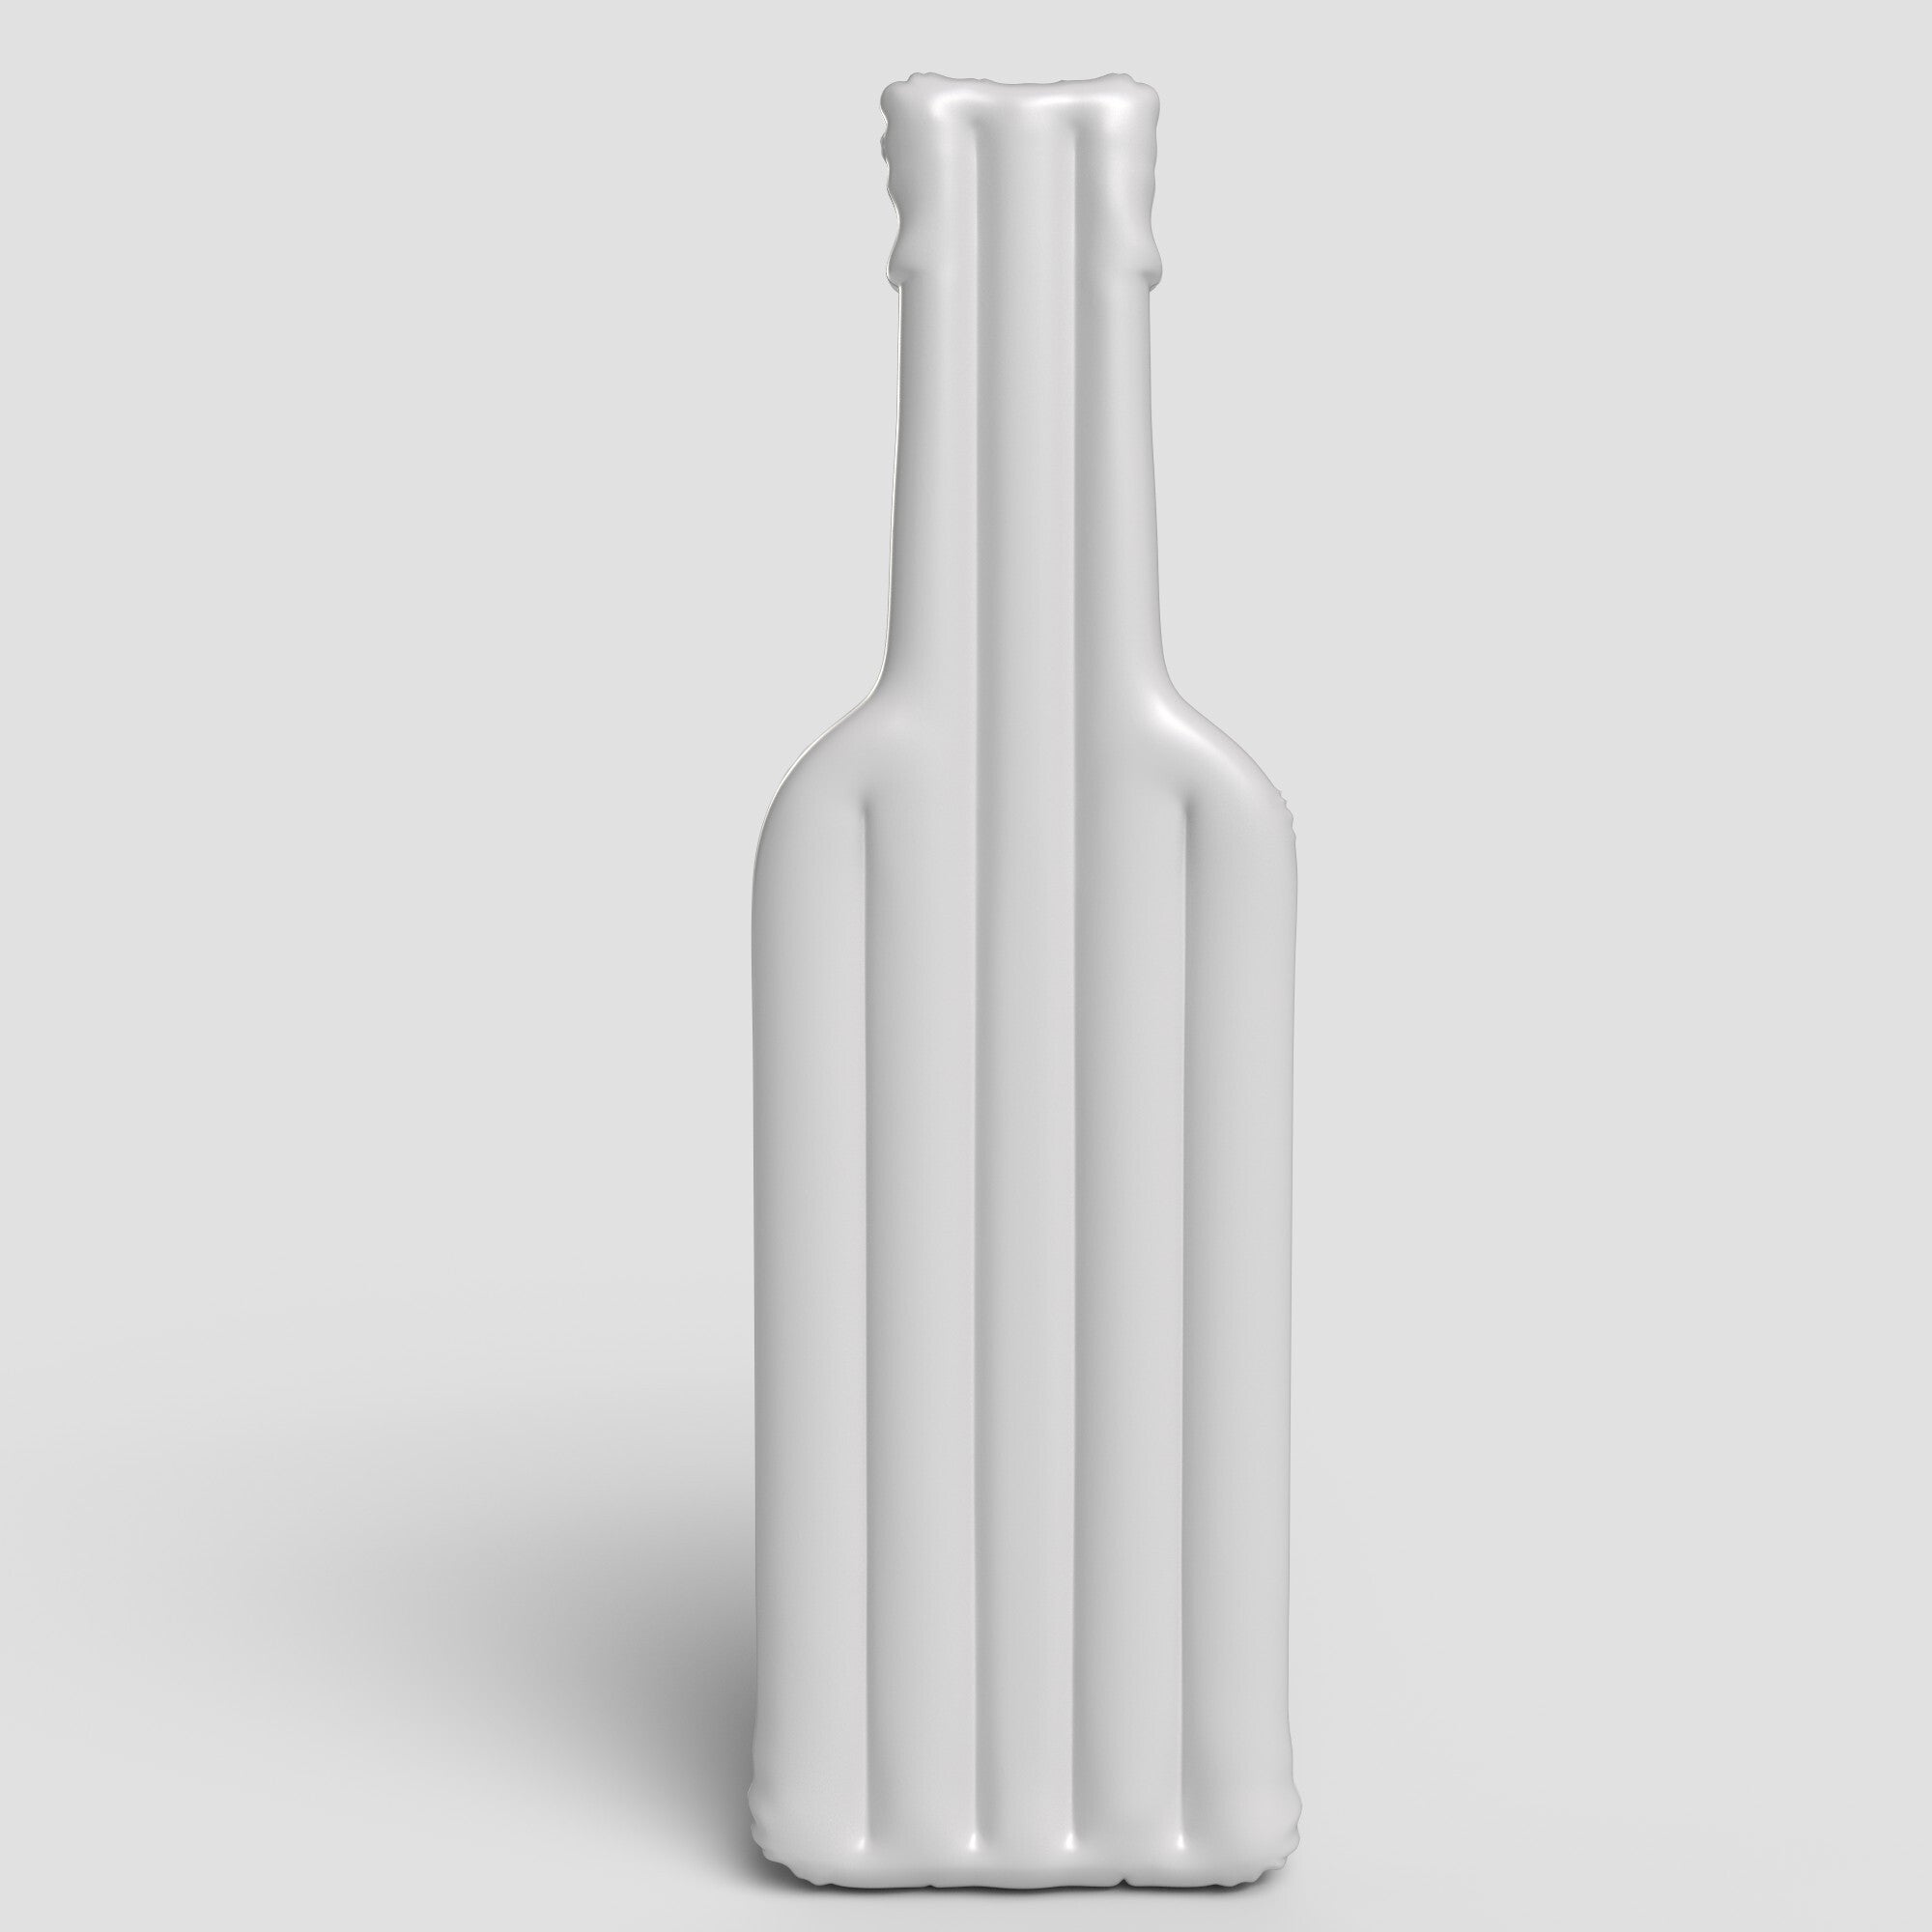 Inflatable Liquor Bottle Floatie Art Template Download